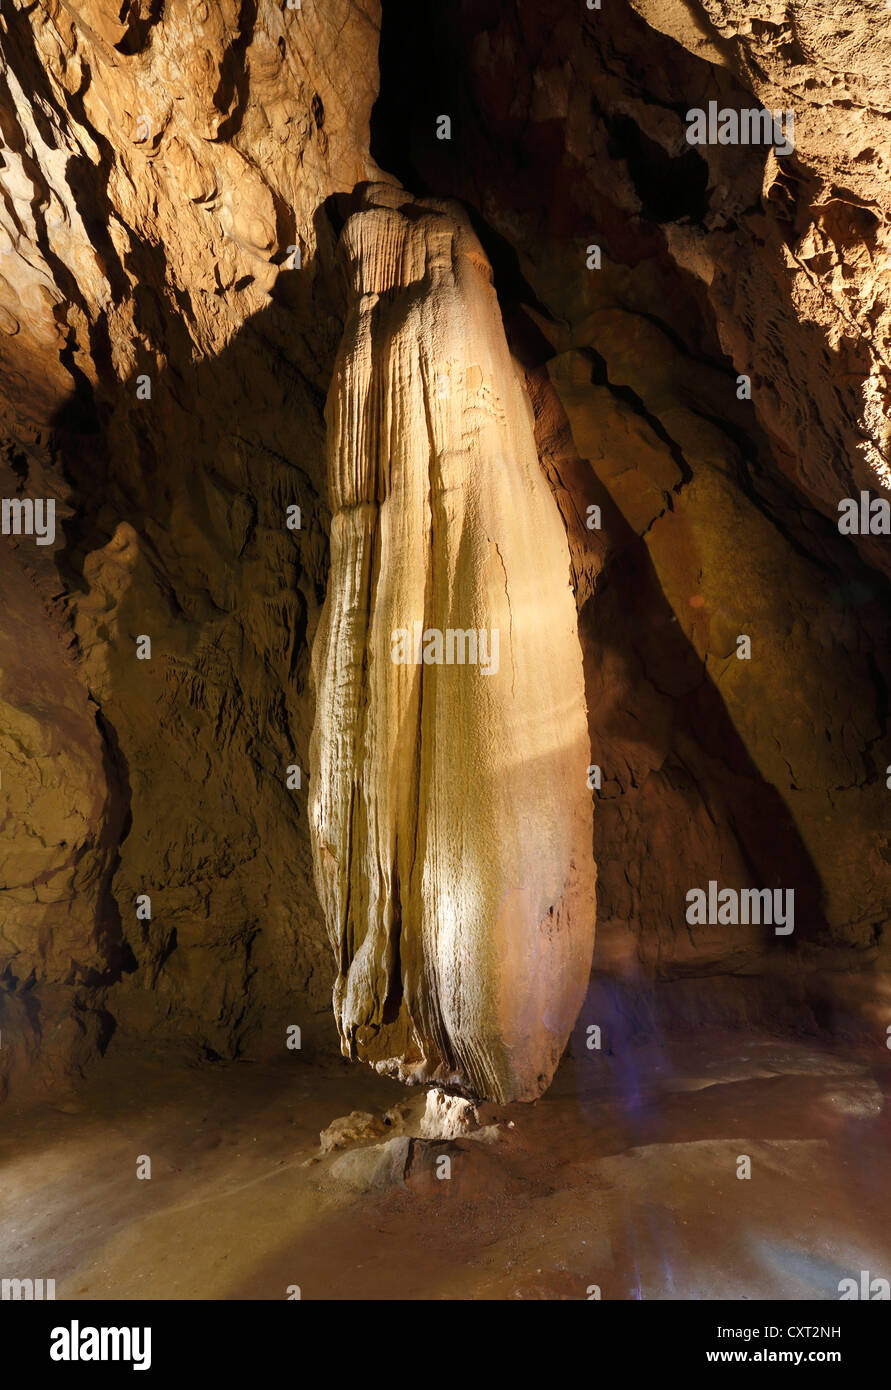 Lurgrotte Stalaktiten Höhle, größte Tropfsteinhöhle der Welt, Semriach, Steiermark, Österreich, Europa Stockfoto